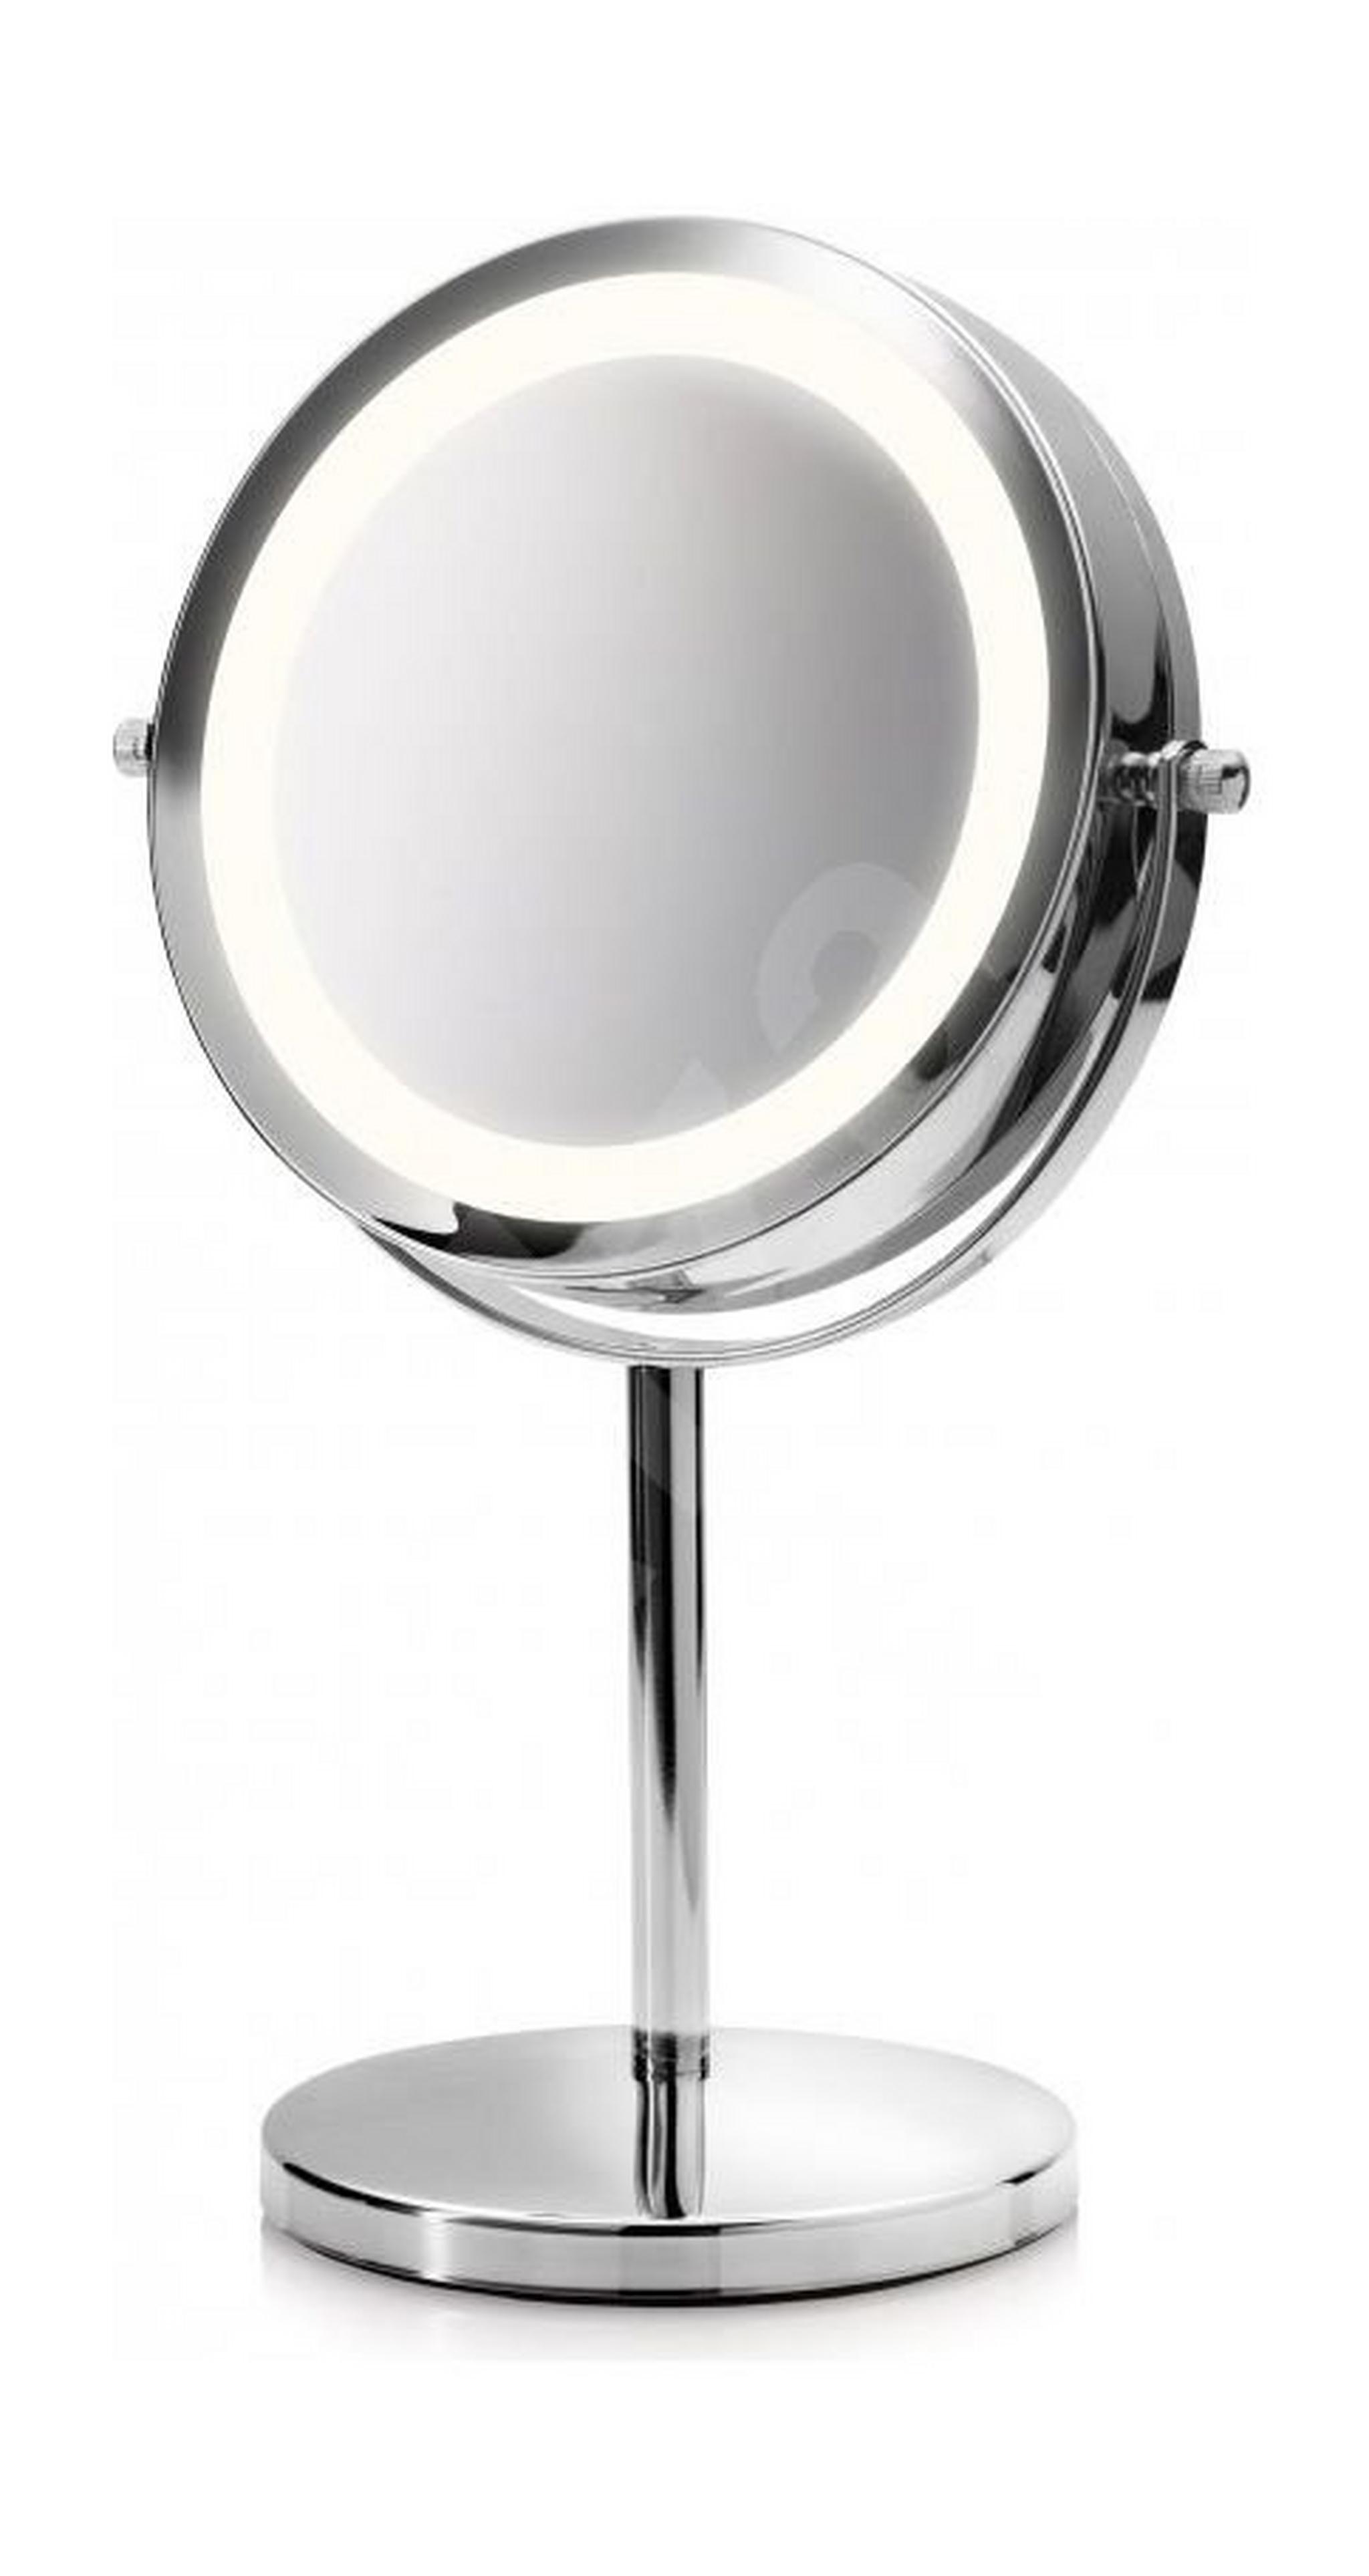 مرآة التجميل ميديسانا ٢ في ١ بإضاءة إل إي دي (CM840)